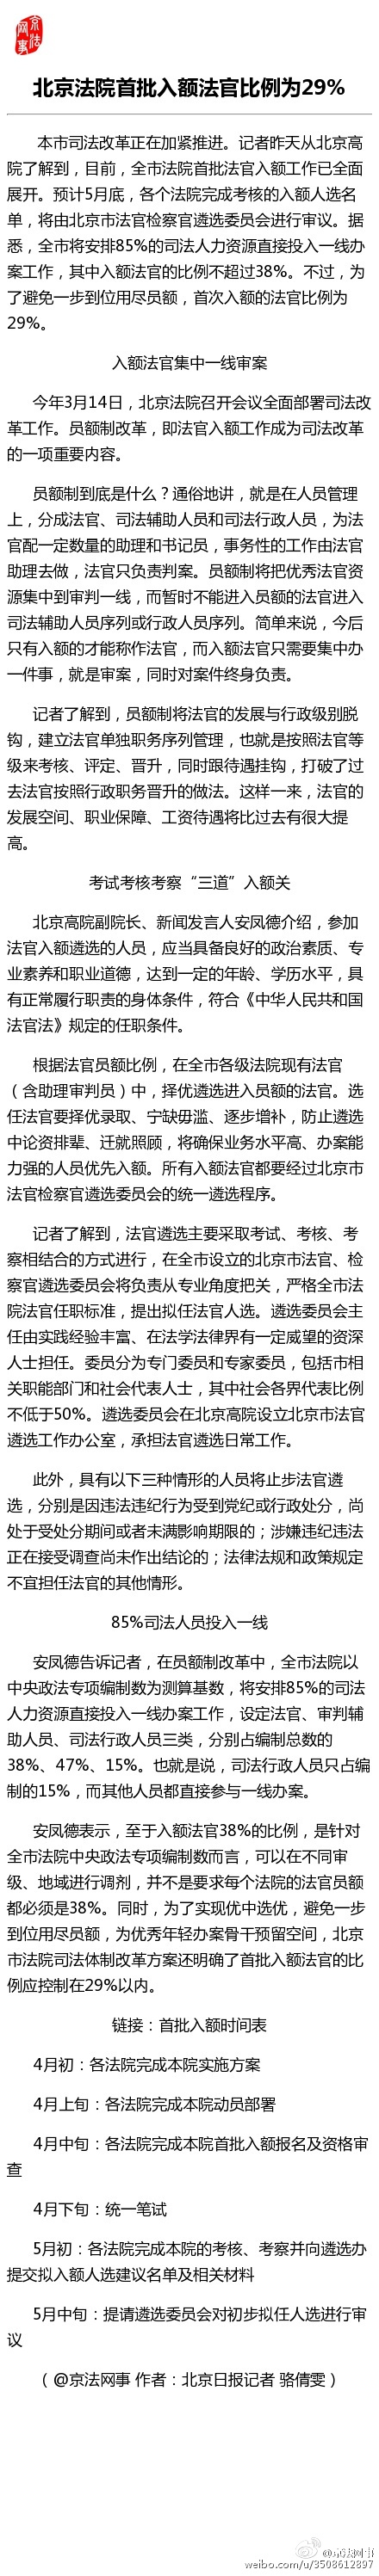 北京法院首批入额法官比例为29%